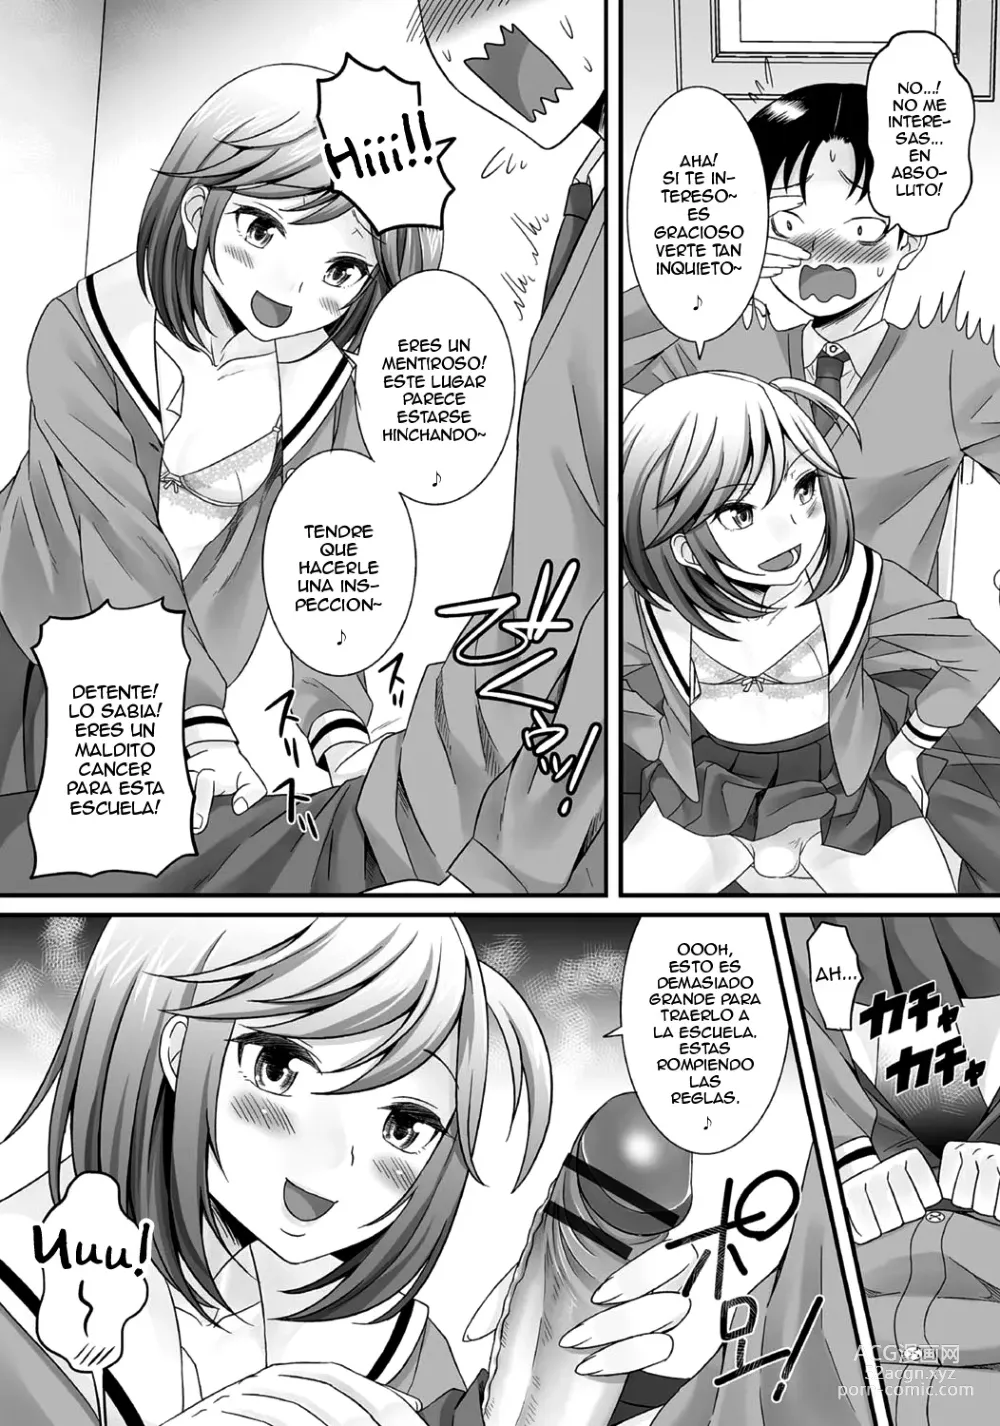 Page 28 of manga Gekkan Web Otoko no Ko-llection! S Vol. 06